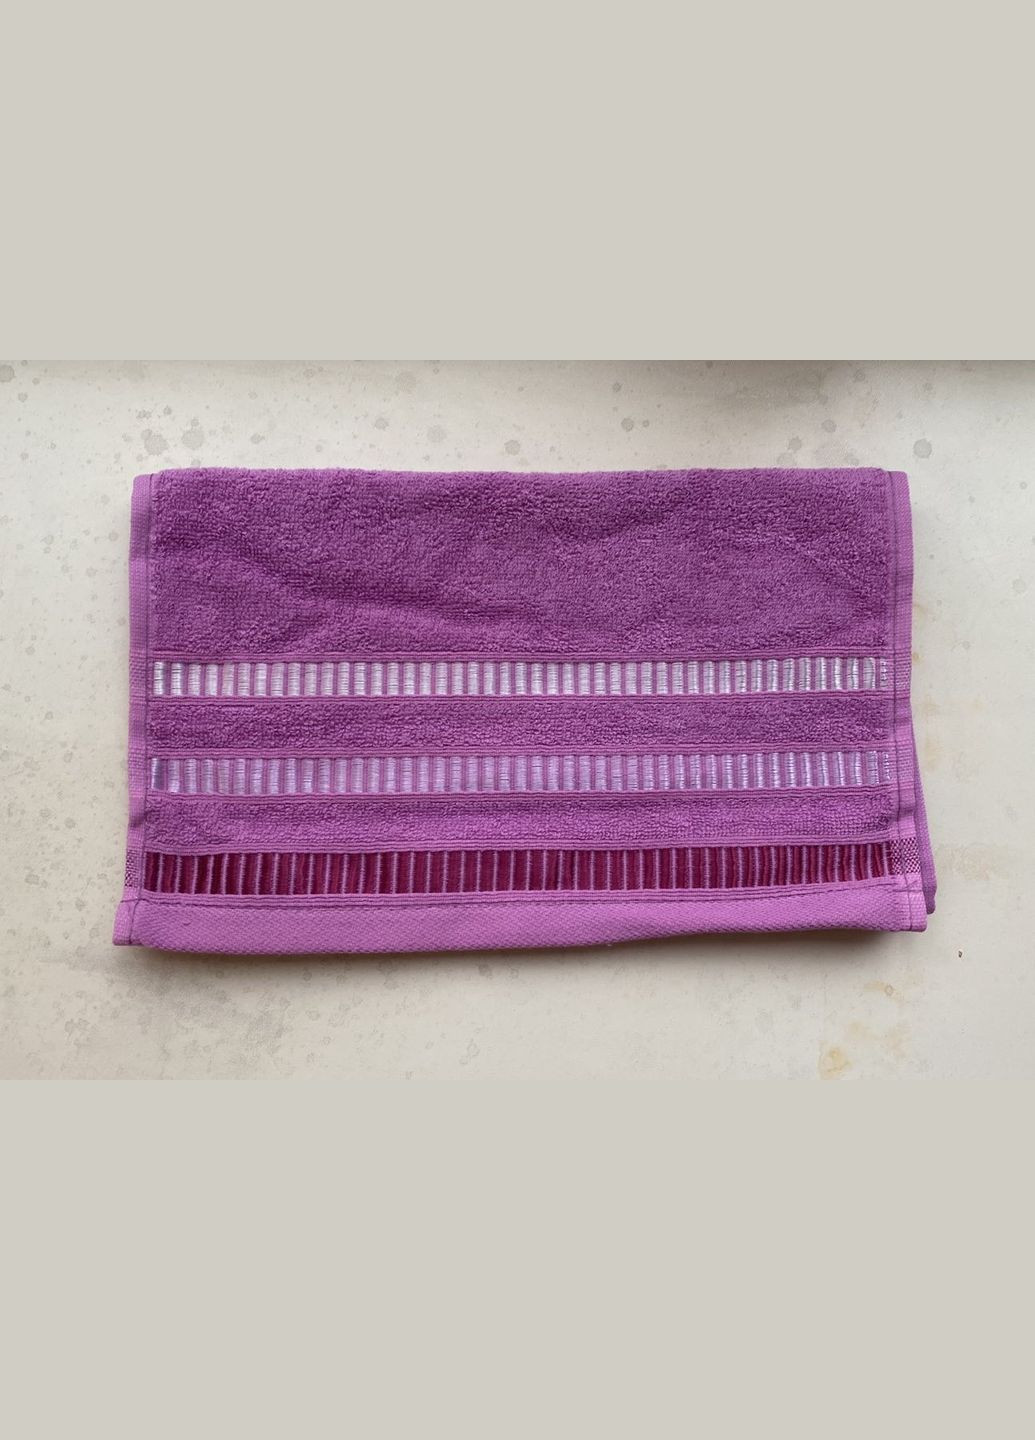 Катруся полотенце махровое 30х50 гладкокрашенное элеганс лиловый производство - Украина